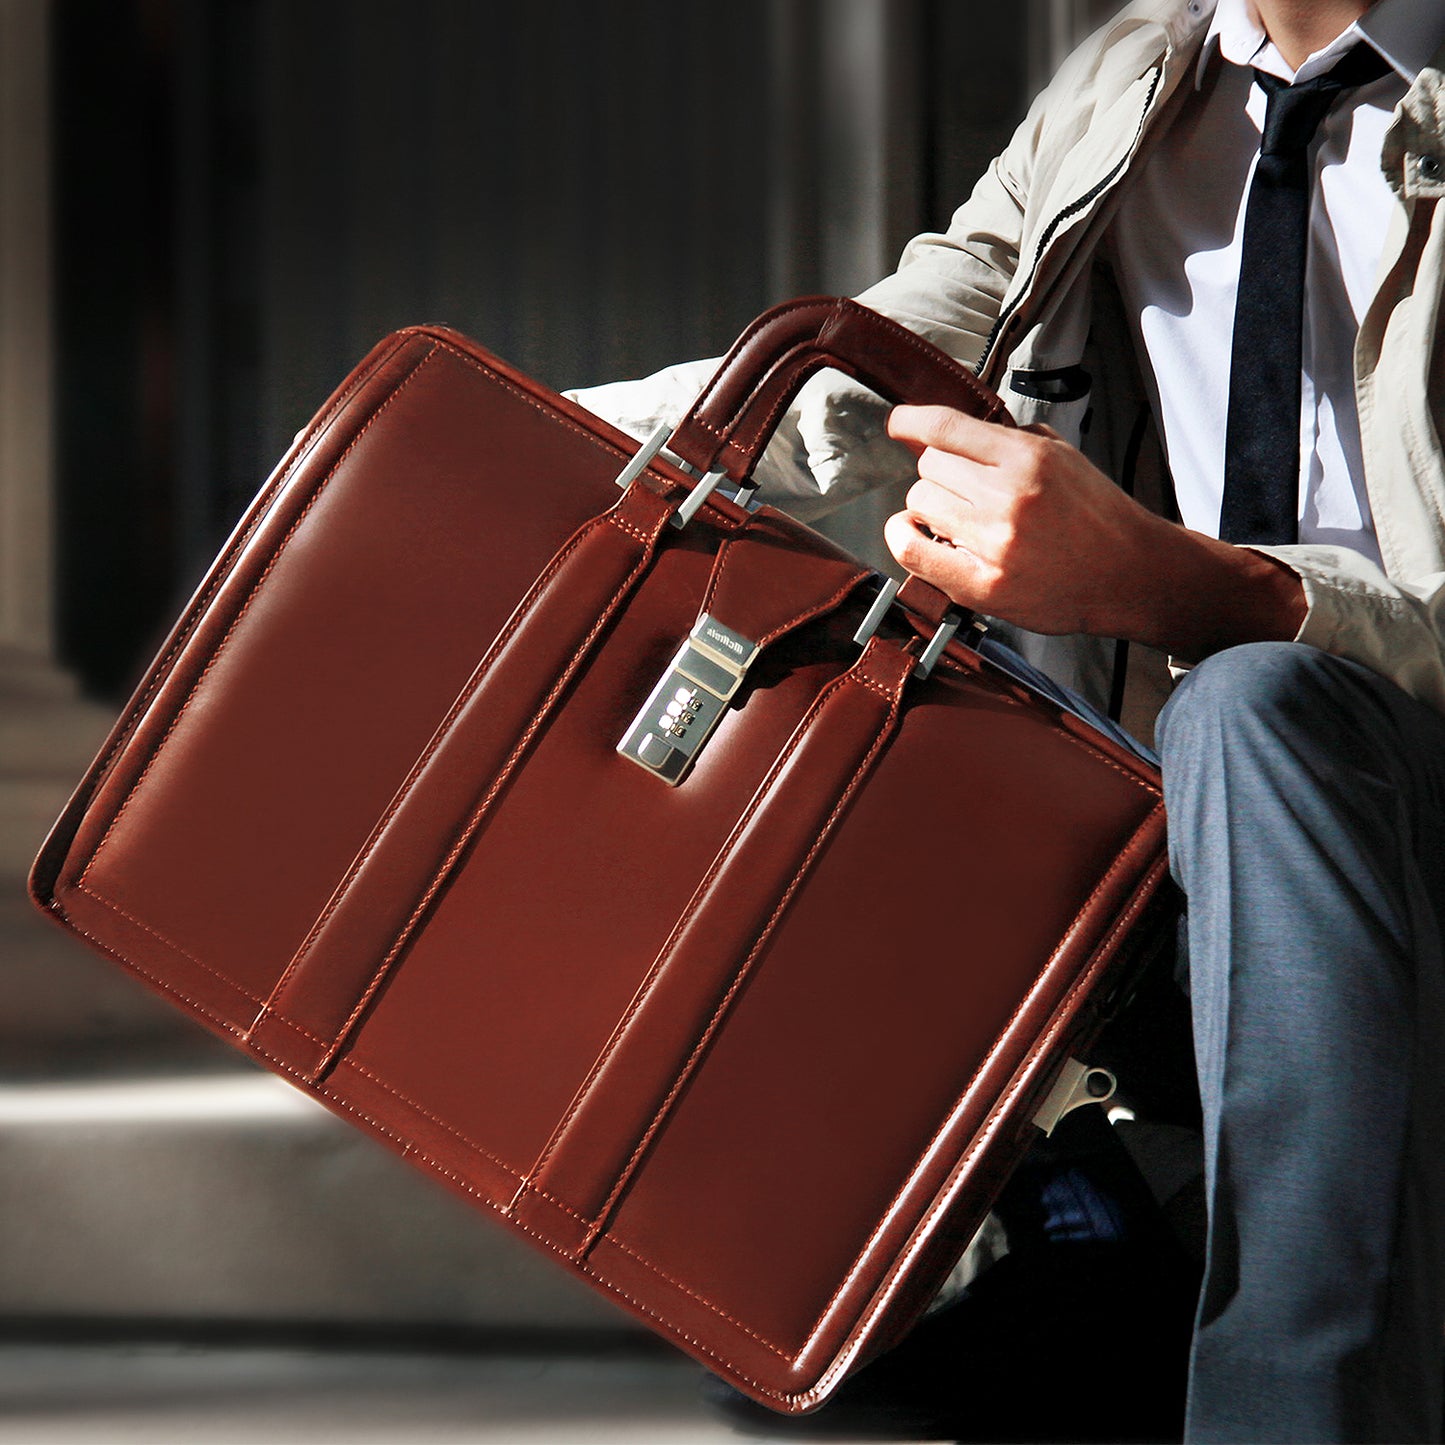 The Morgan leather attache briefcase